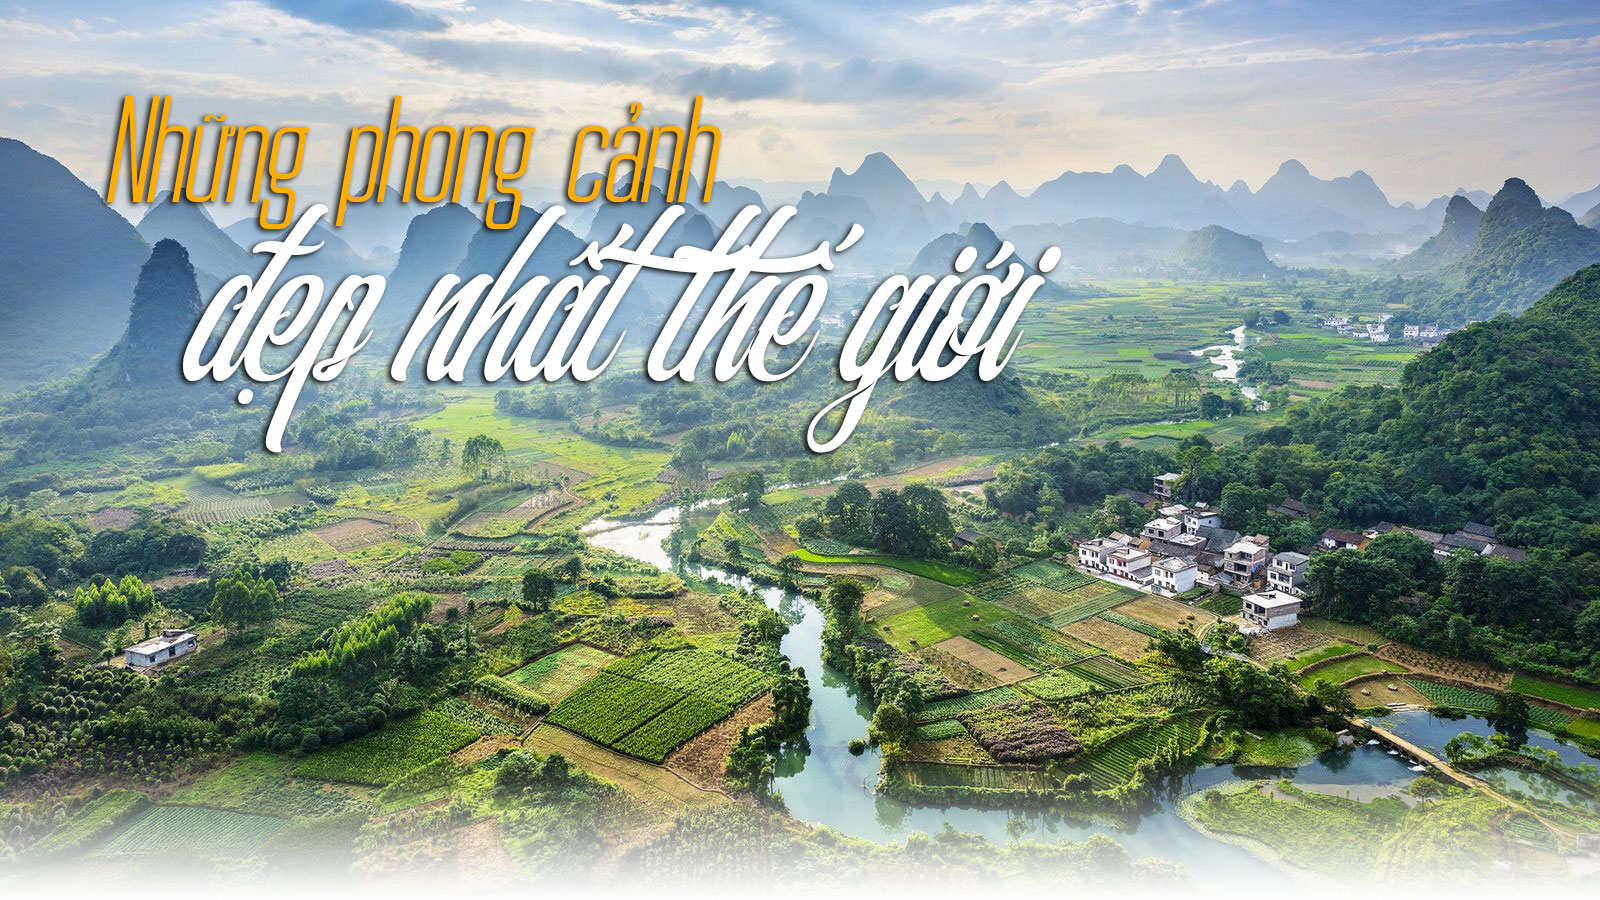 Việt Nam lọt top những phong cảnh đẹp nhất thế giới - 1